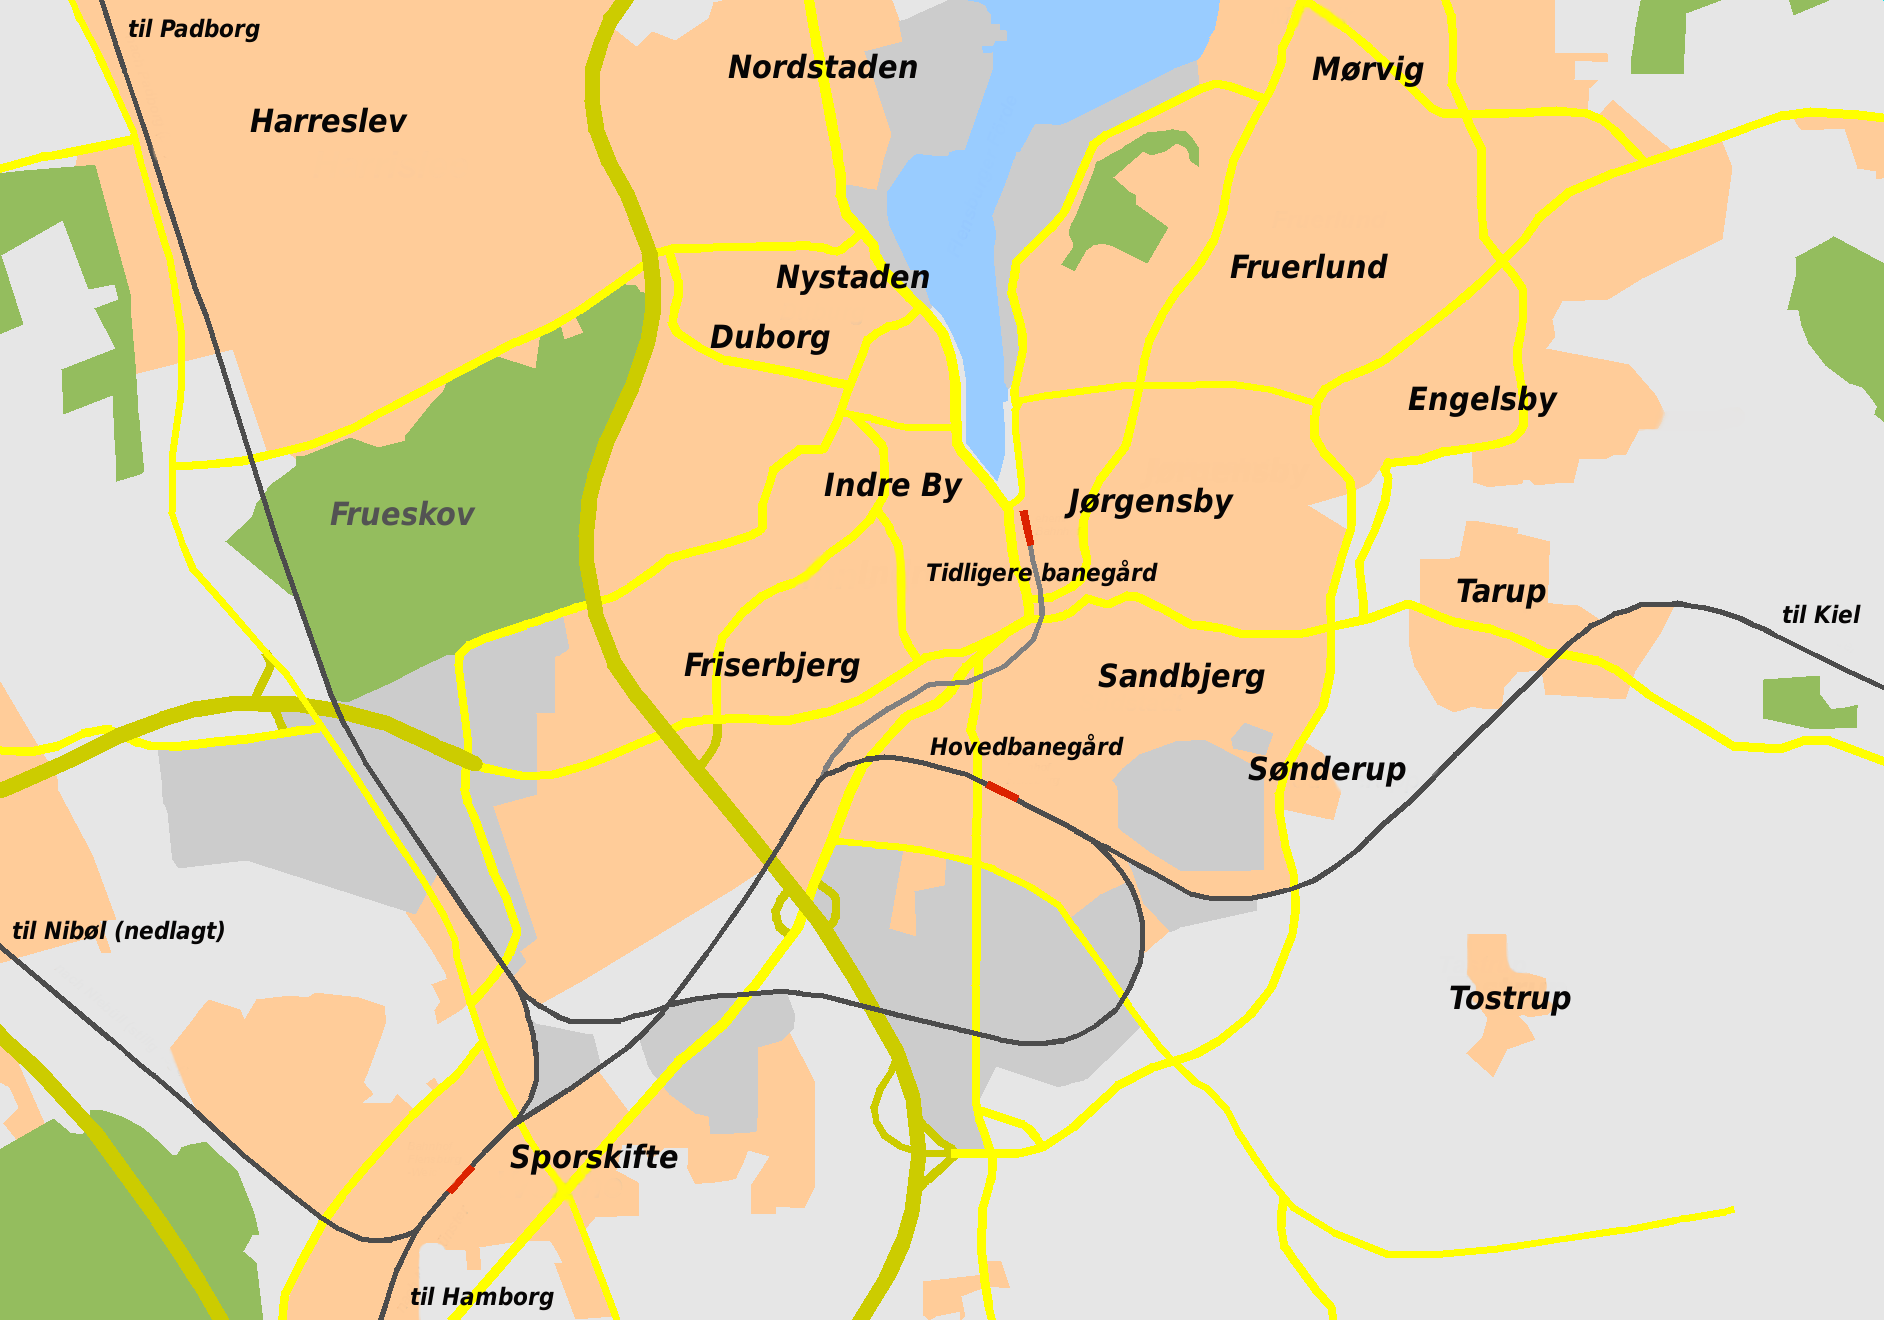 kort over flensborg File Railway Map Flensborg Png Wikimedia Commons kort over flensborg